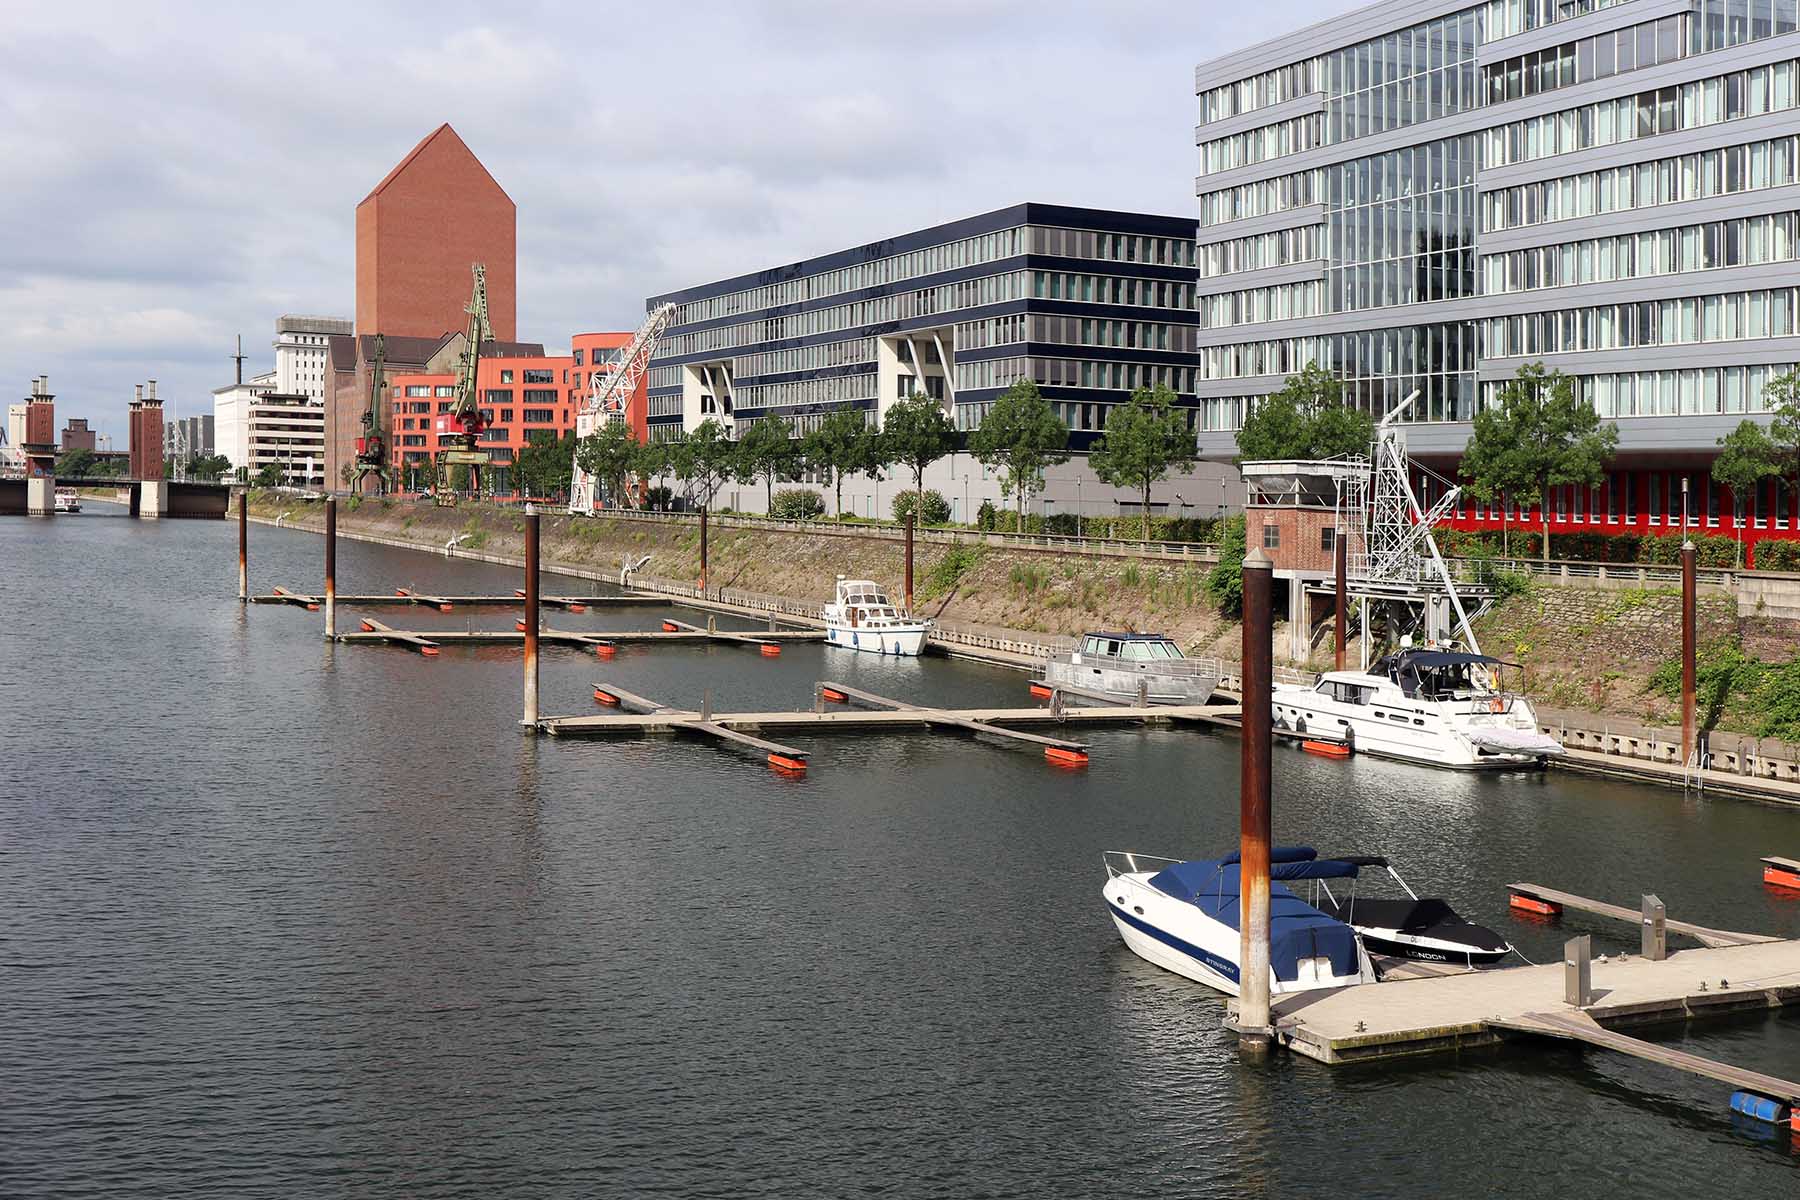 Innenhafen Duisburg. Marina mit dem hoch aufragenden Landesarchiv NRW von Ortner & Ortner Baukunst aus Düsseldorf.